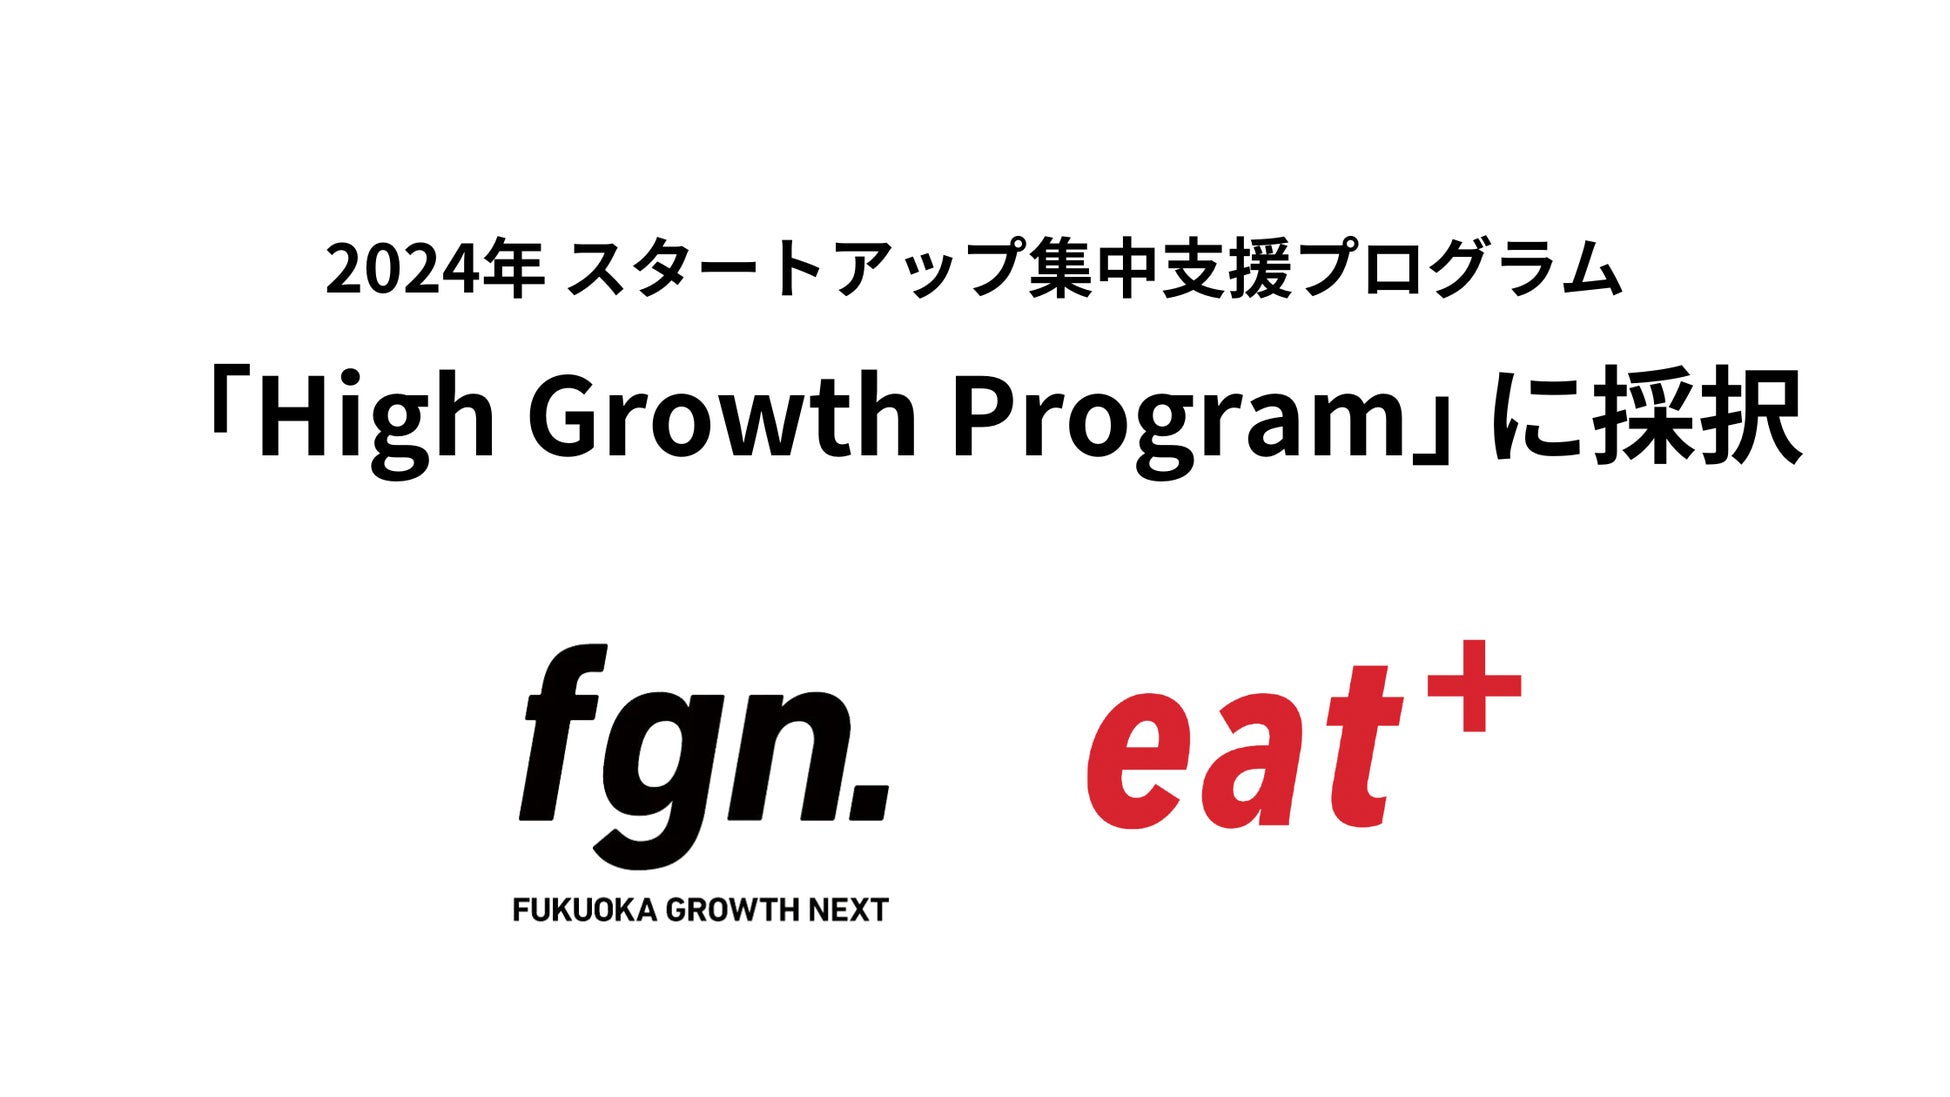 パーソナル食事指導サービスのeatas株式会社がFukuoka Growth Nextのスタートアップ集中支援プログラム「High Growth Program」に採択